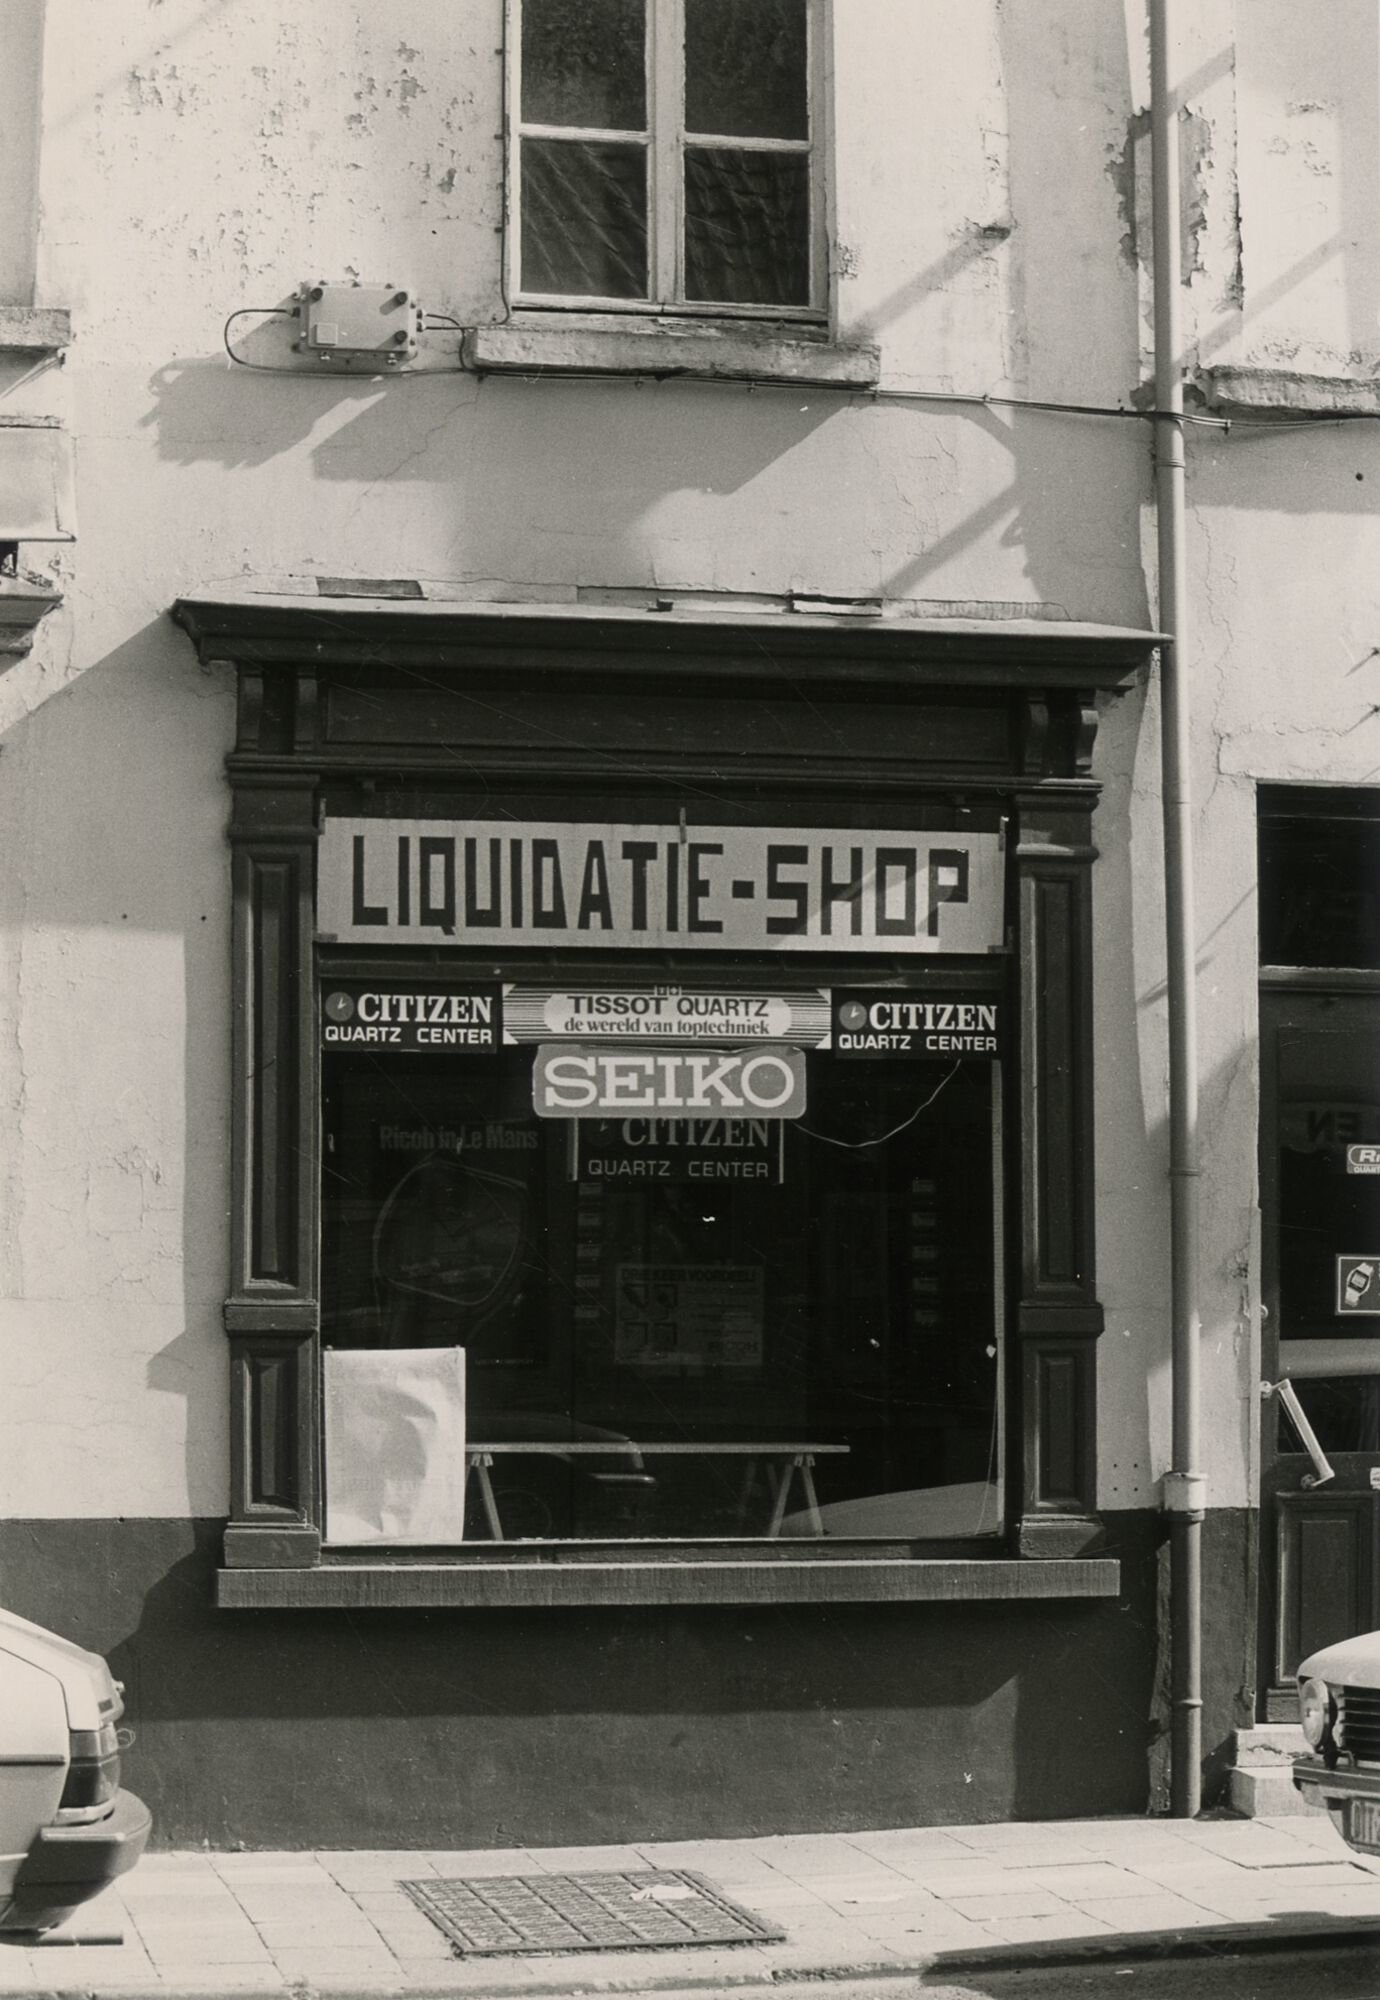 Etalage van een liquidatie-shop in Gent